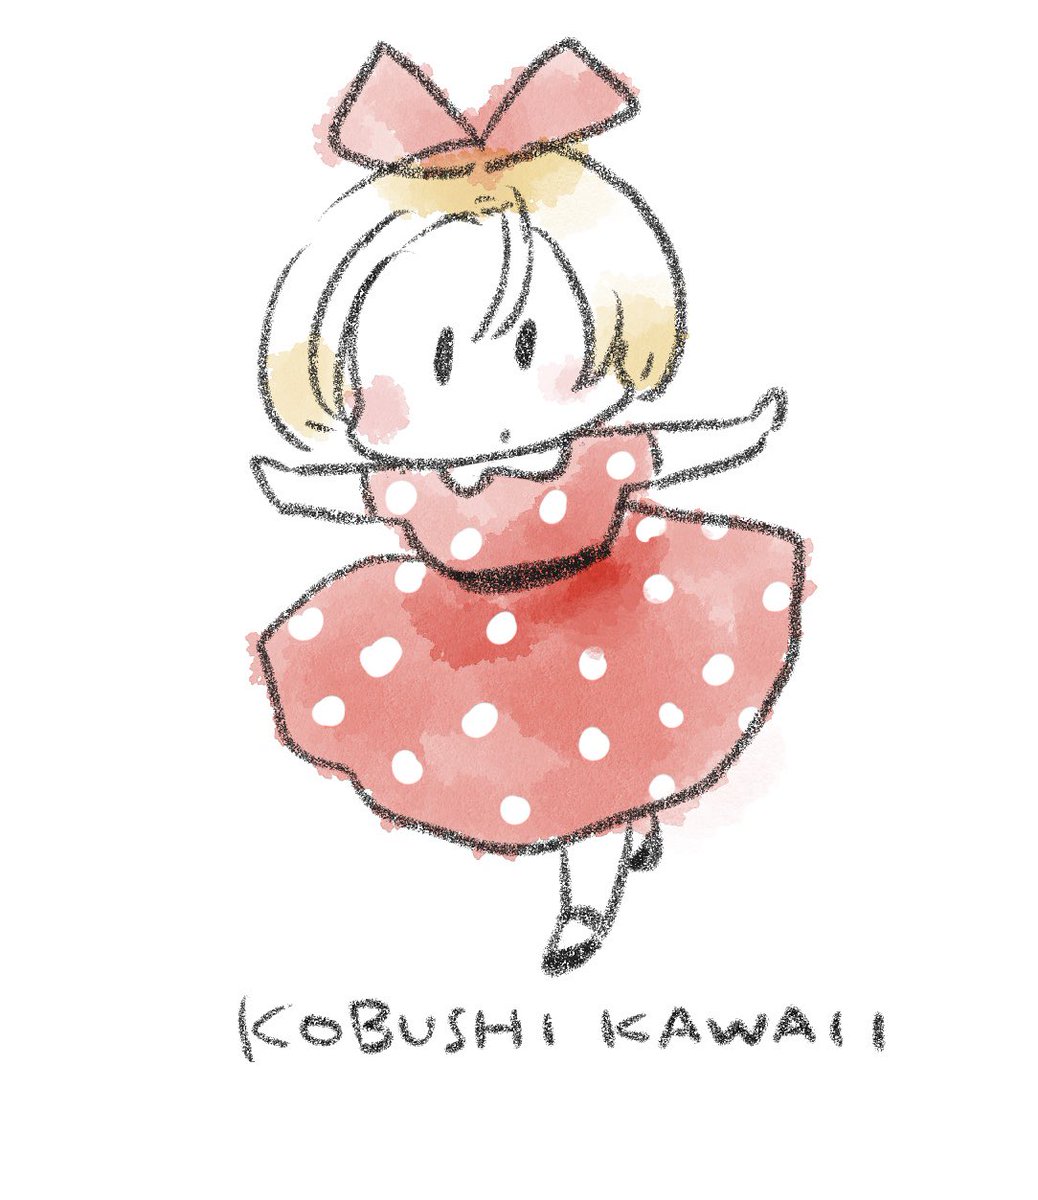 #あなたが描いた剛力番長こと白雪宮拳ちゃんを見せてください
iPad Proを買ったので剛力番長を描きました
kobushi kawaii 